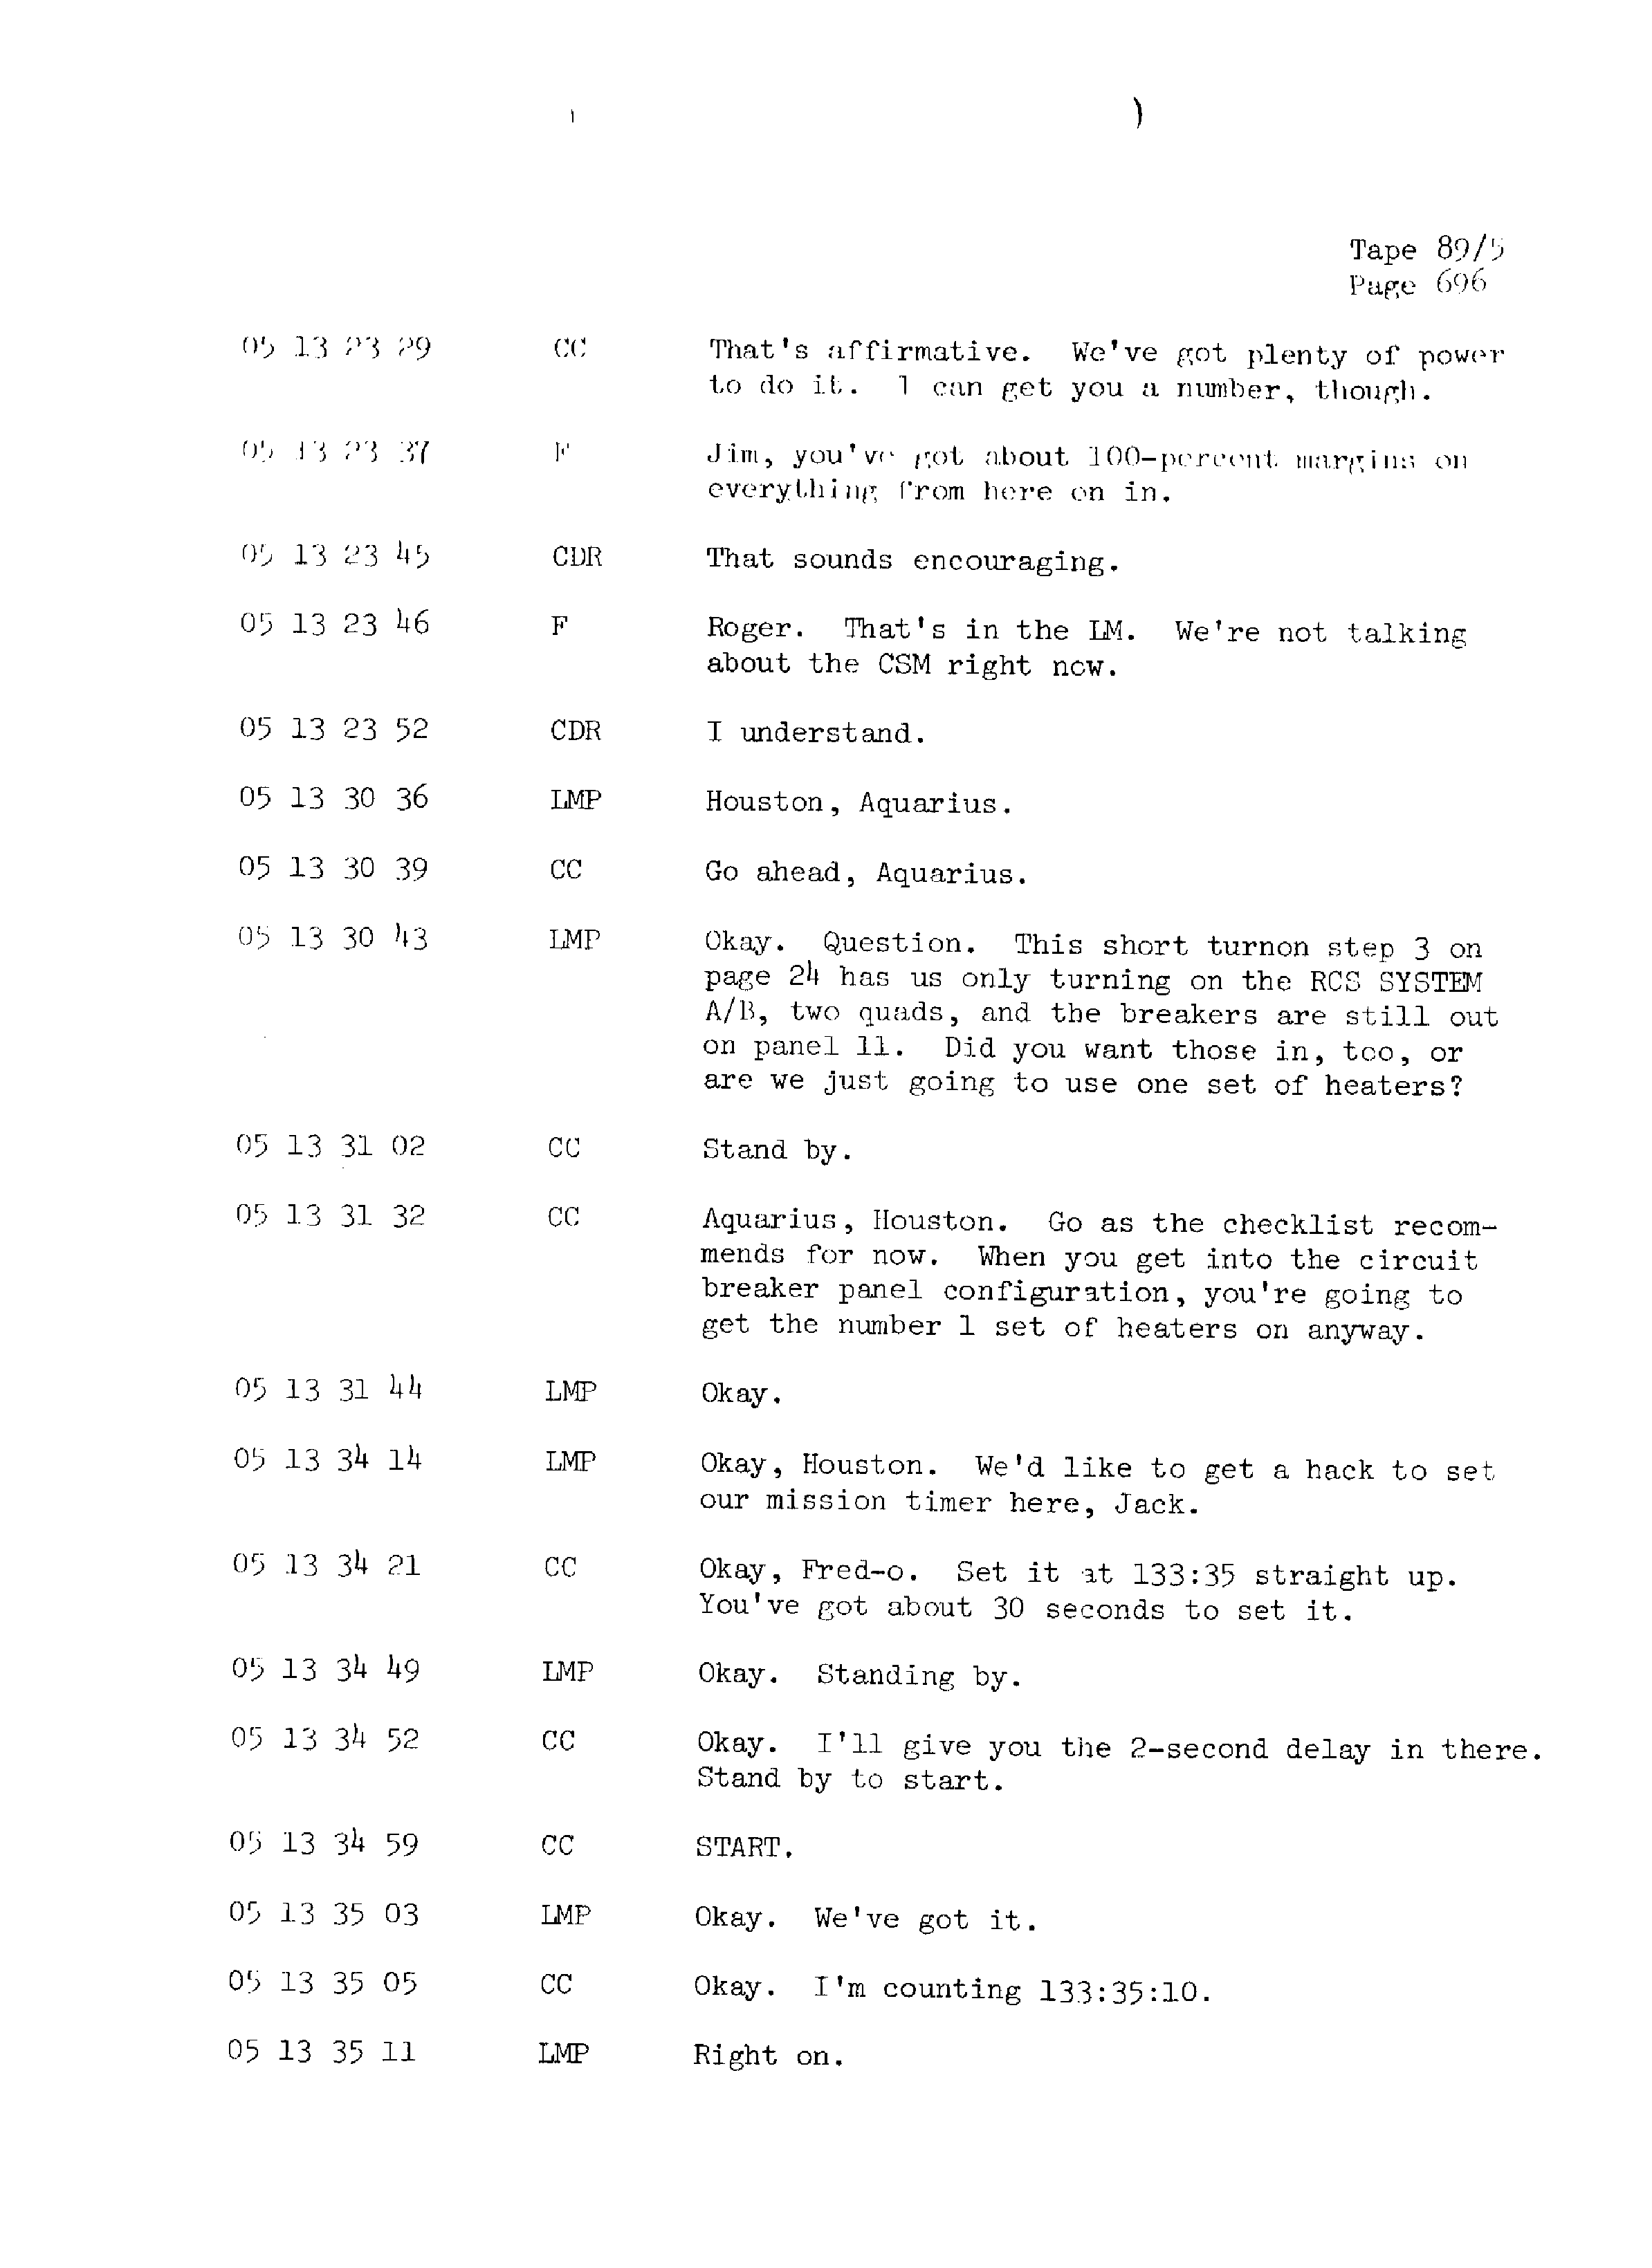 Page 703 of Apollo 13’s original transcript